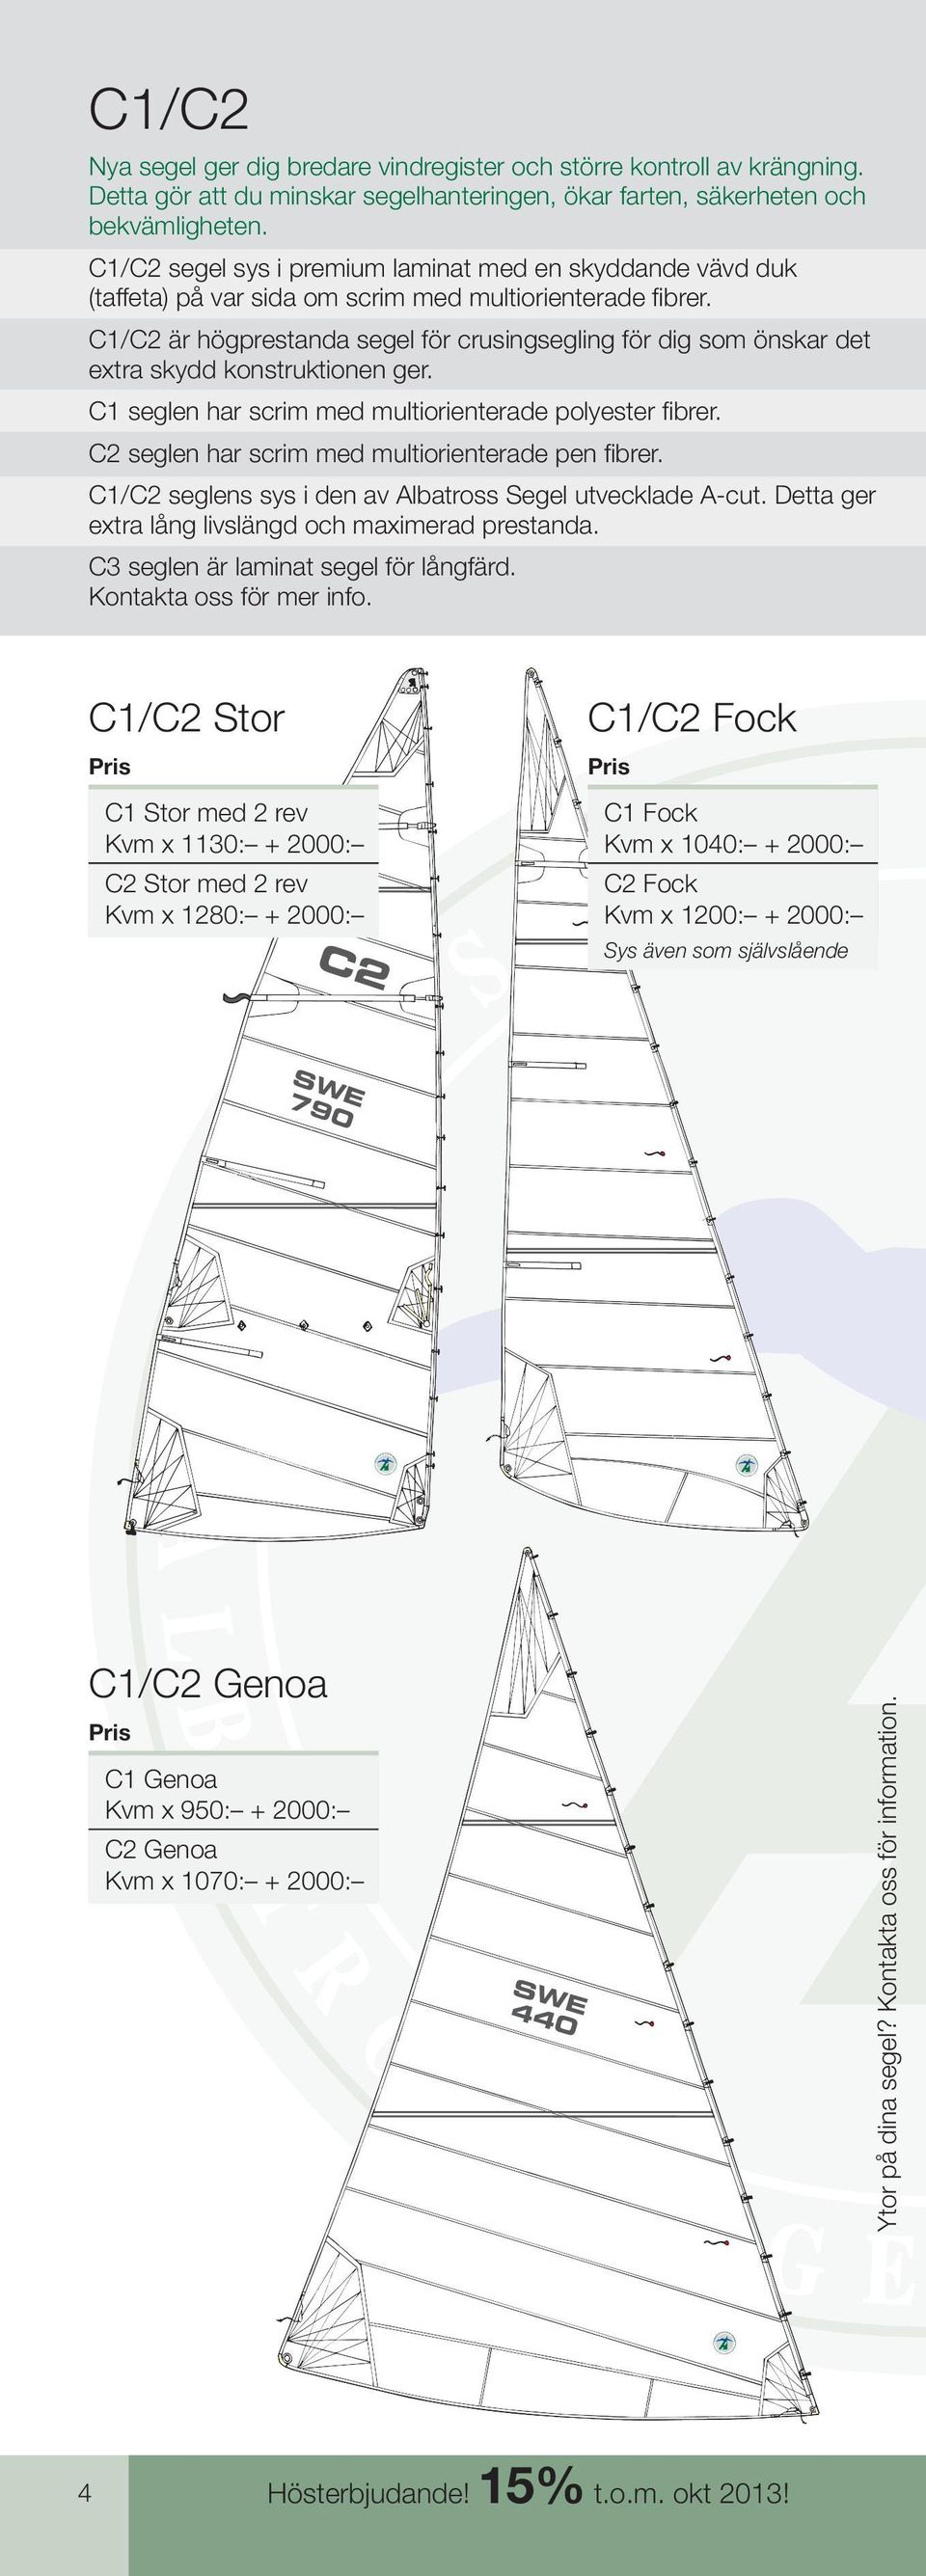 C/C2 är högprestanda segel för crusingsegling för dig som önskar det extra skydd konstruktionen ger. C seglen har scrim med multiorienterade polyester fi brer.